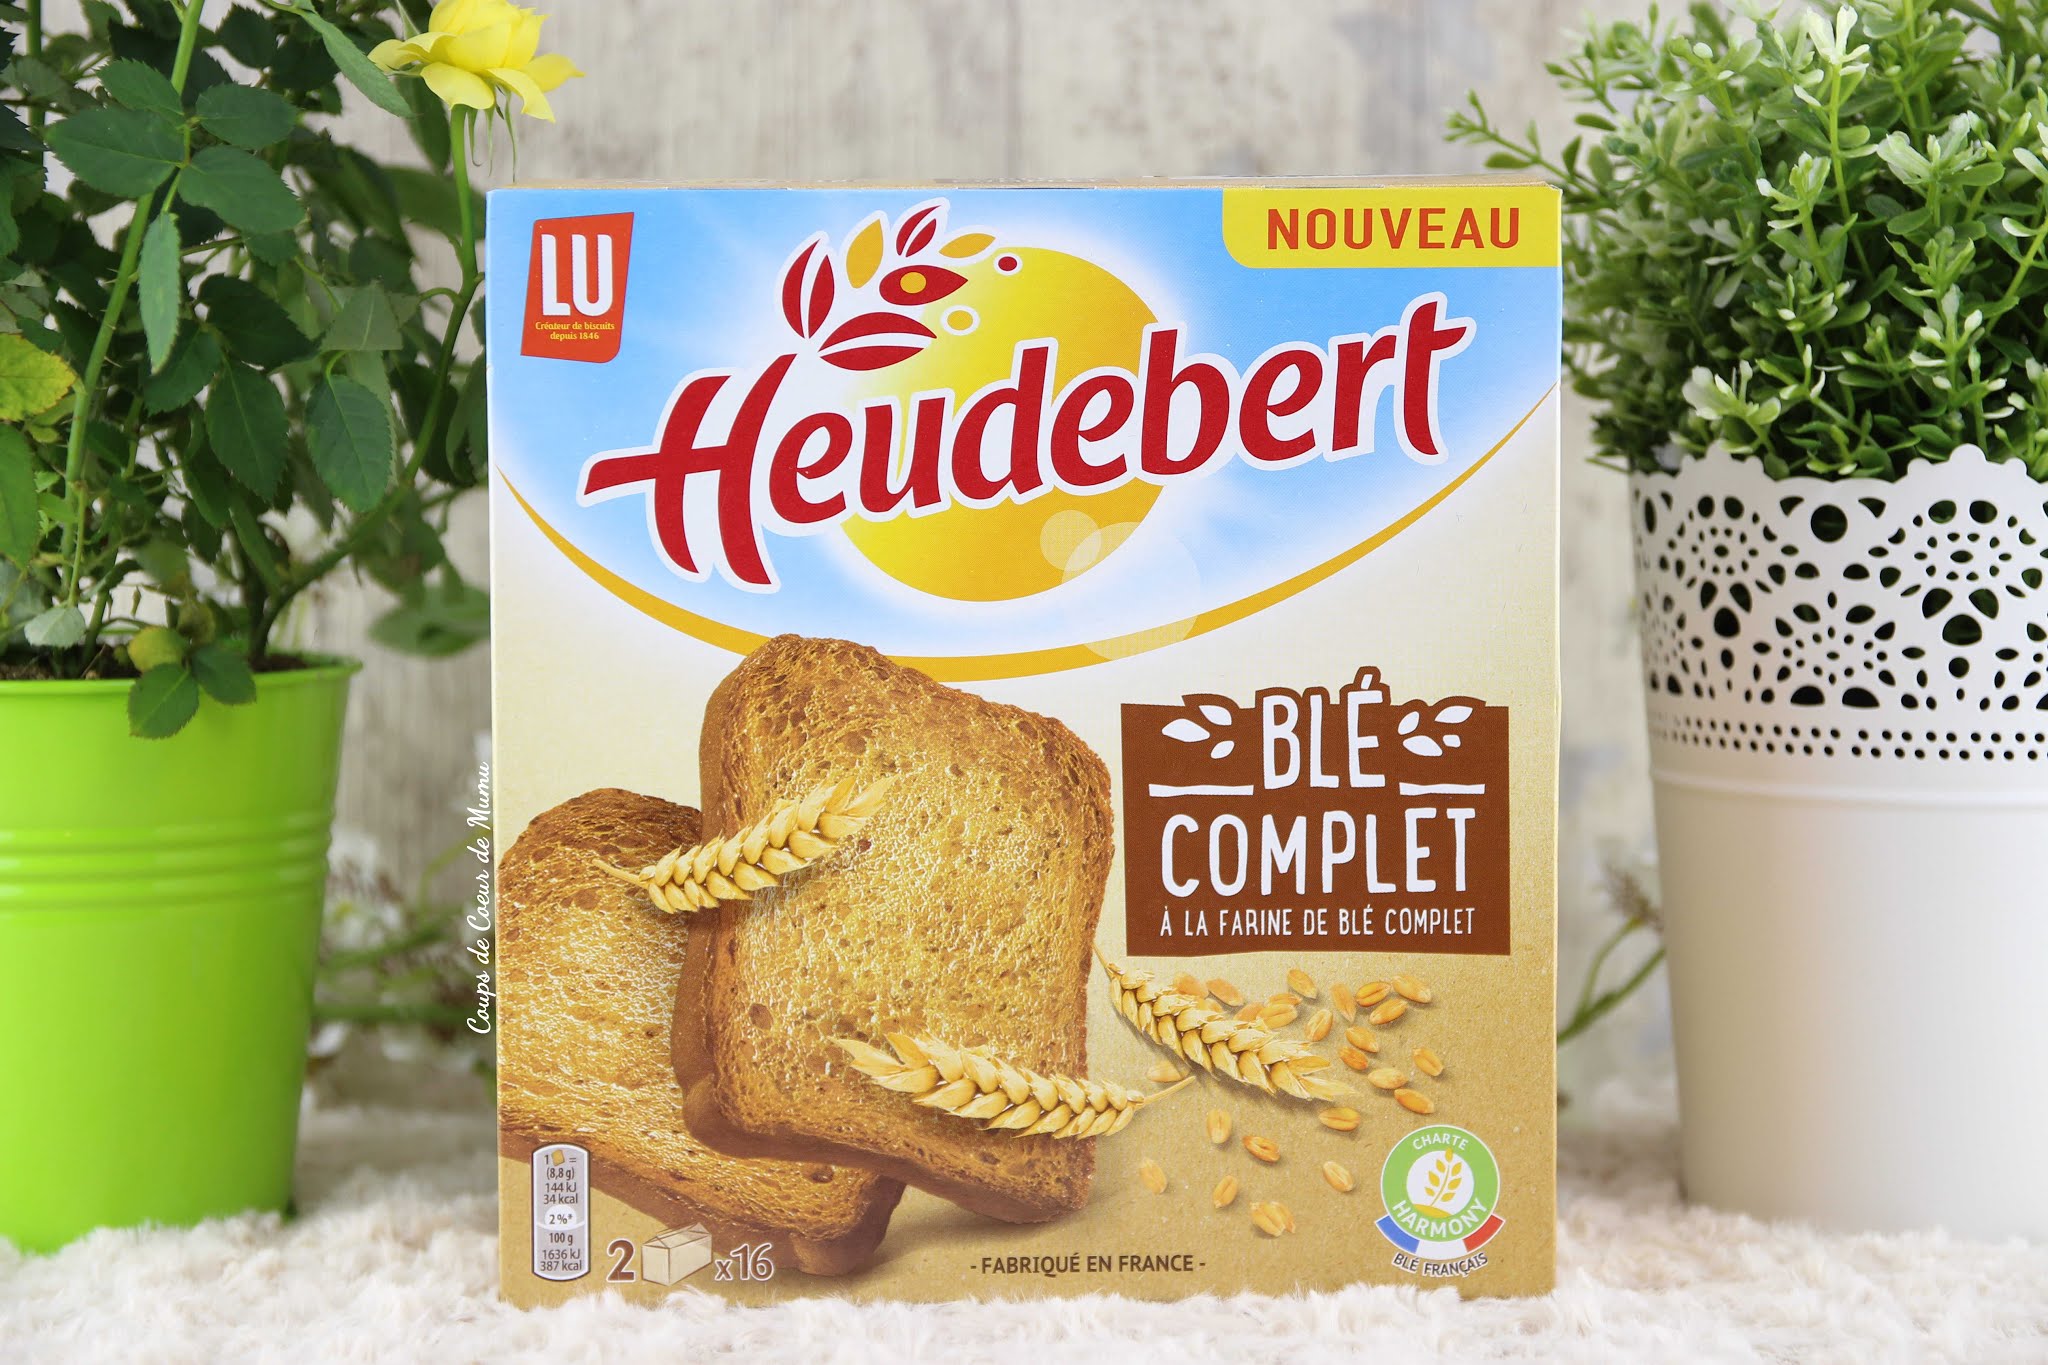 Heudebert - Biscottes Céréales & Graine ou Blé complet, Février 2019